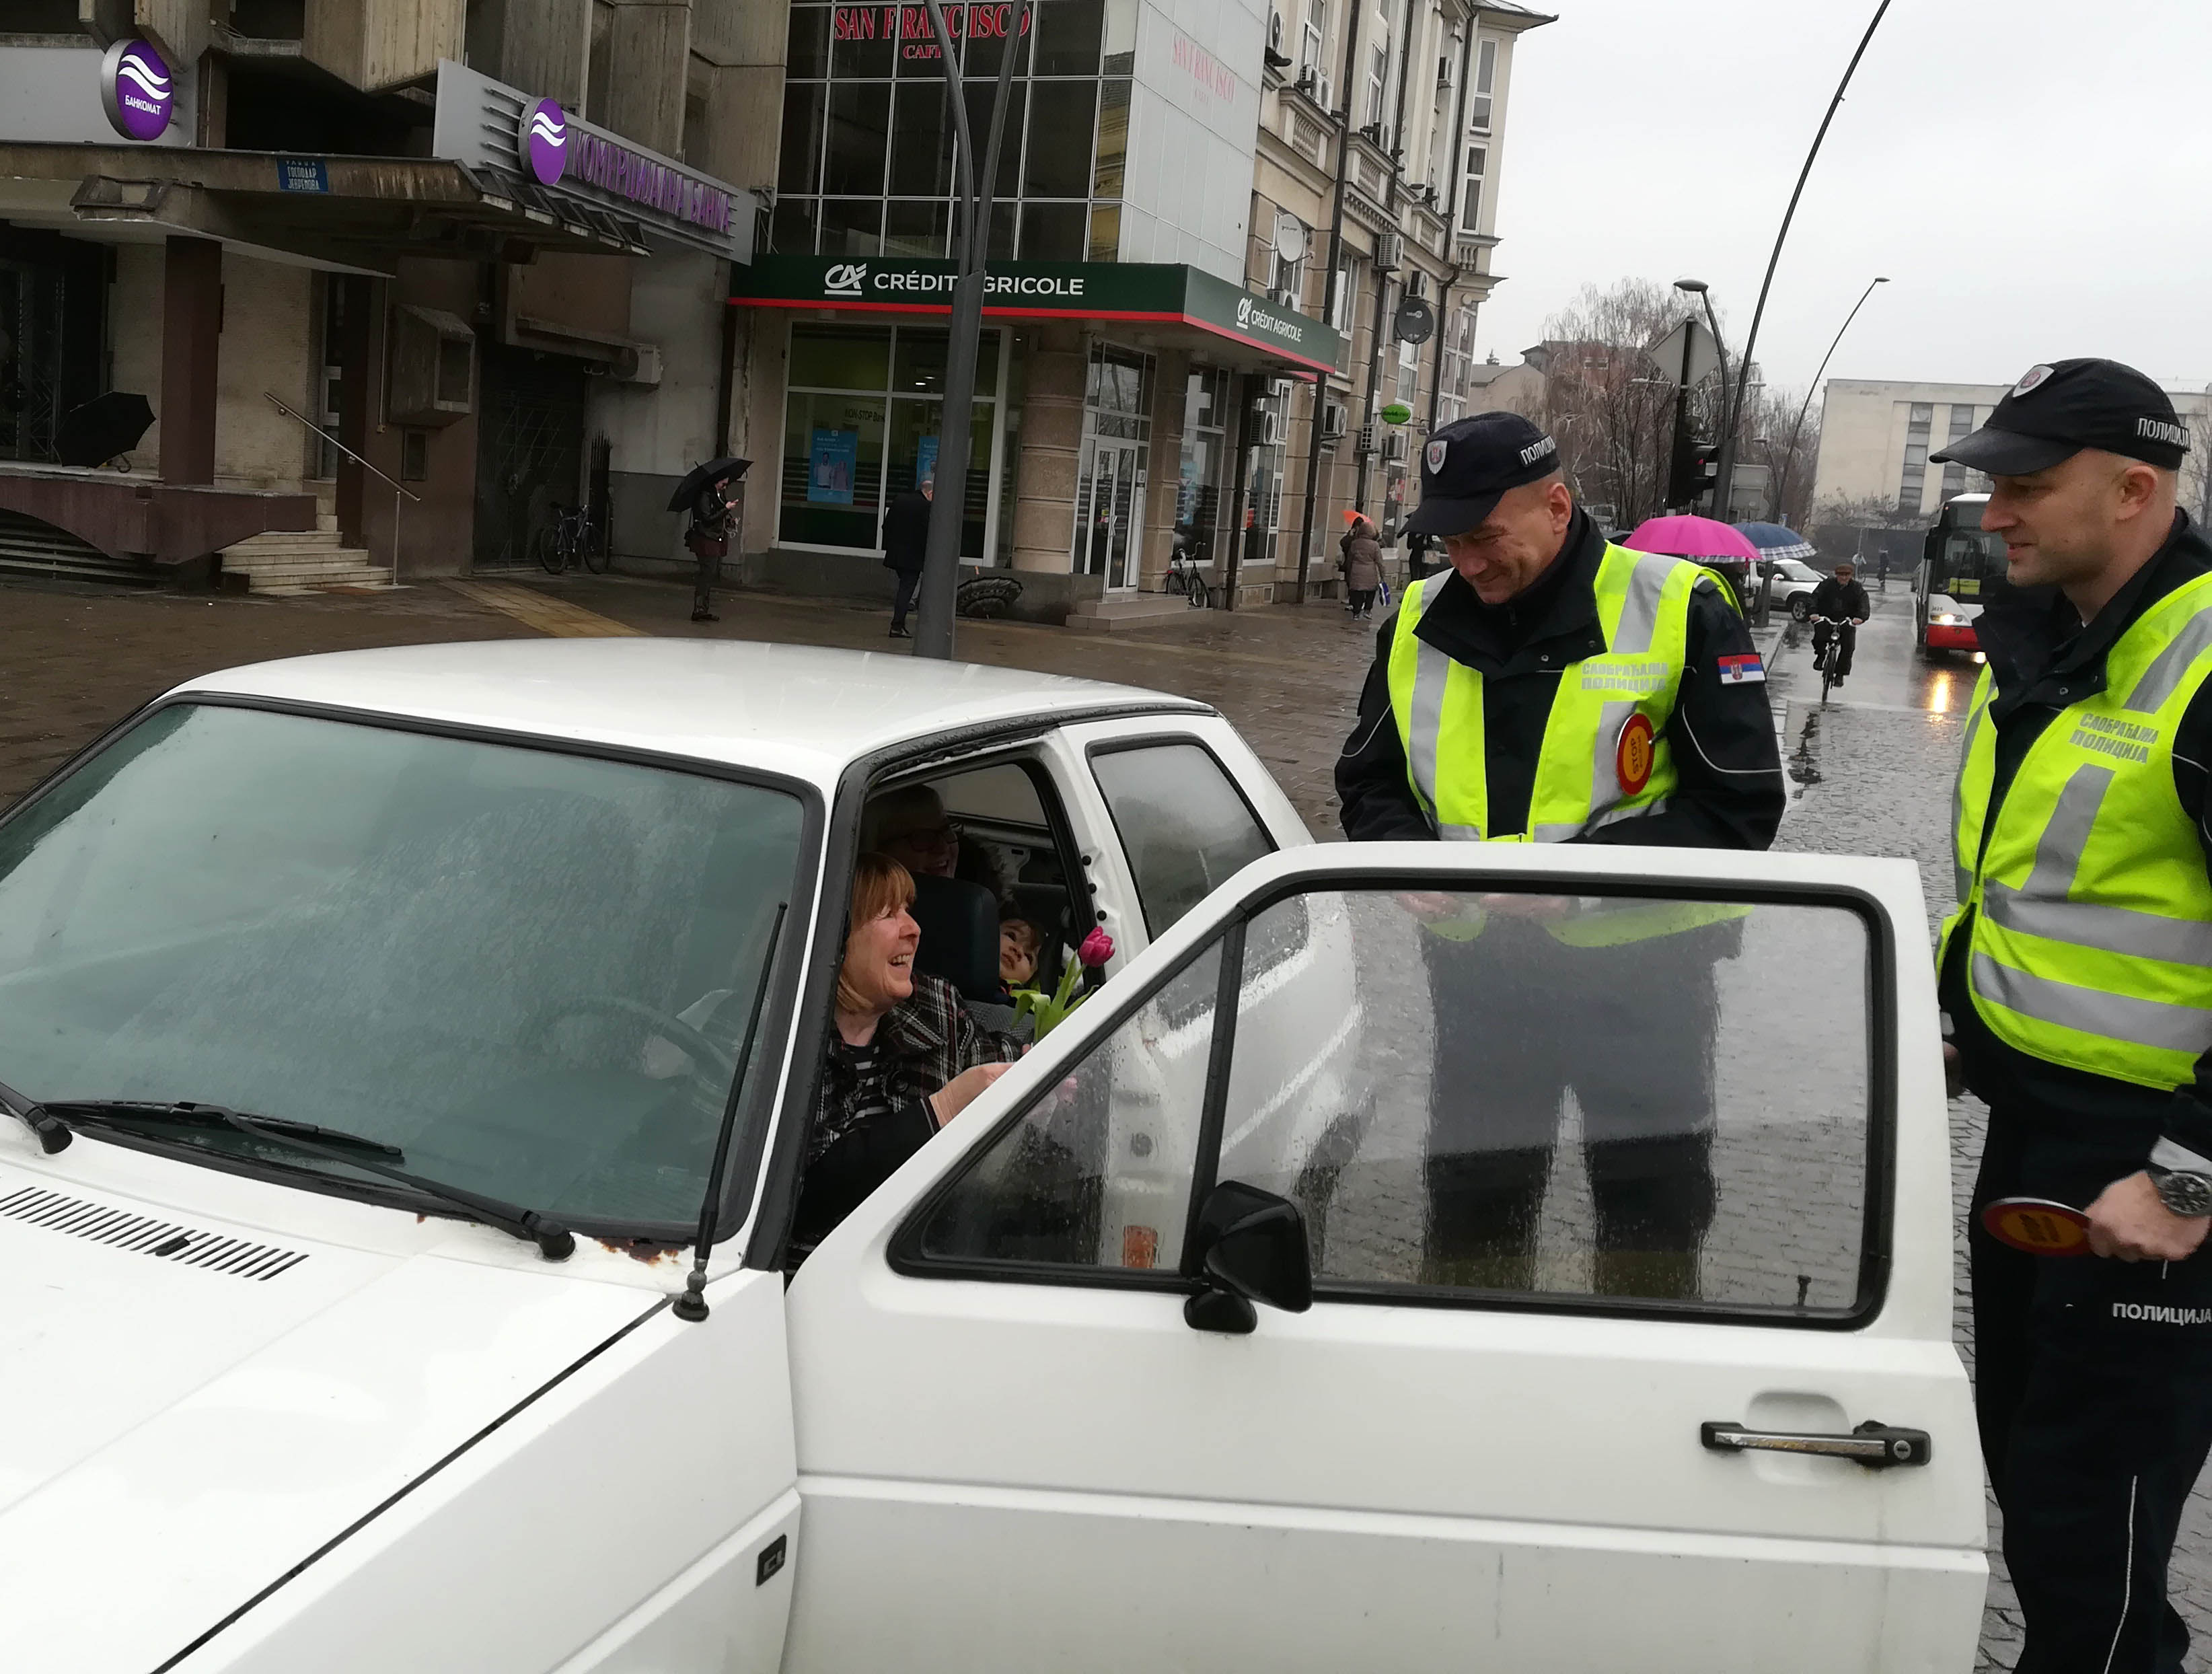 Saobraćajni policajci prijatno iznenadili žene vozače cvećem i čestitkom za 8. mart